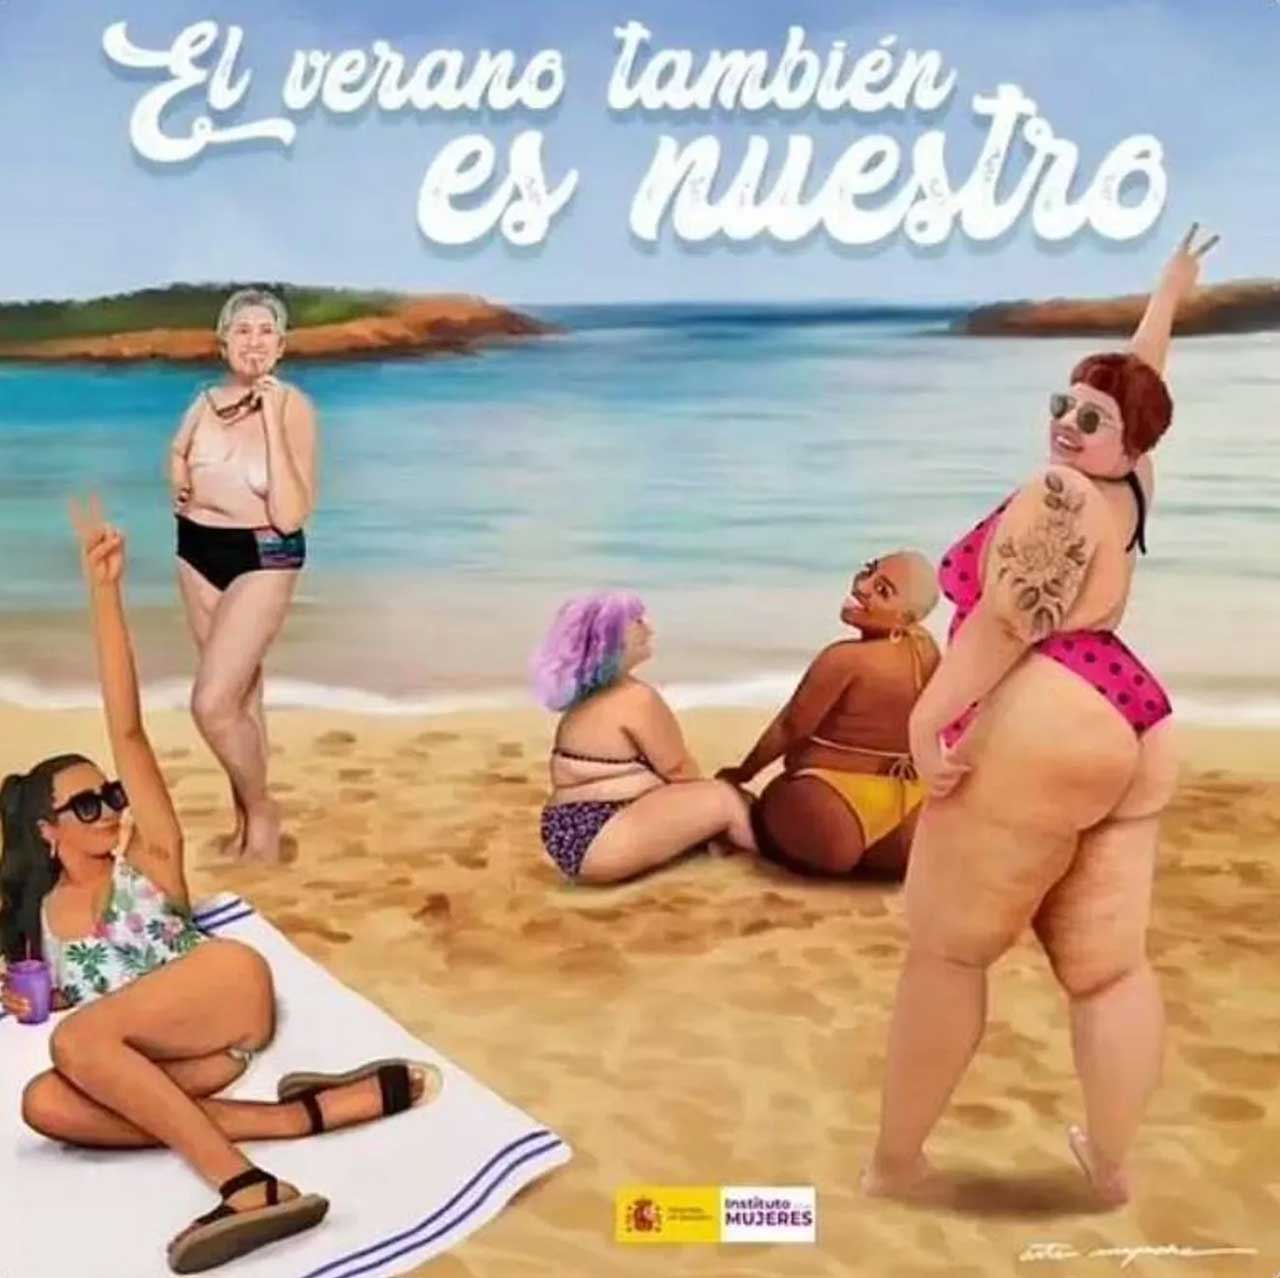 Власти Испании импортируют женщин в топлес для борьбы с сексуализацией